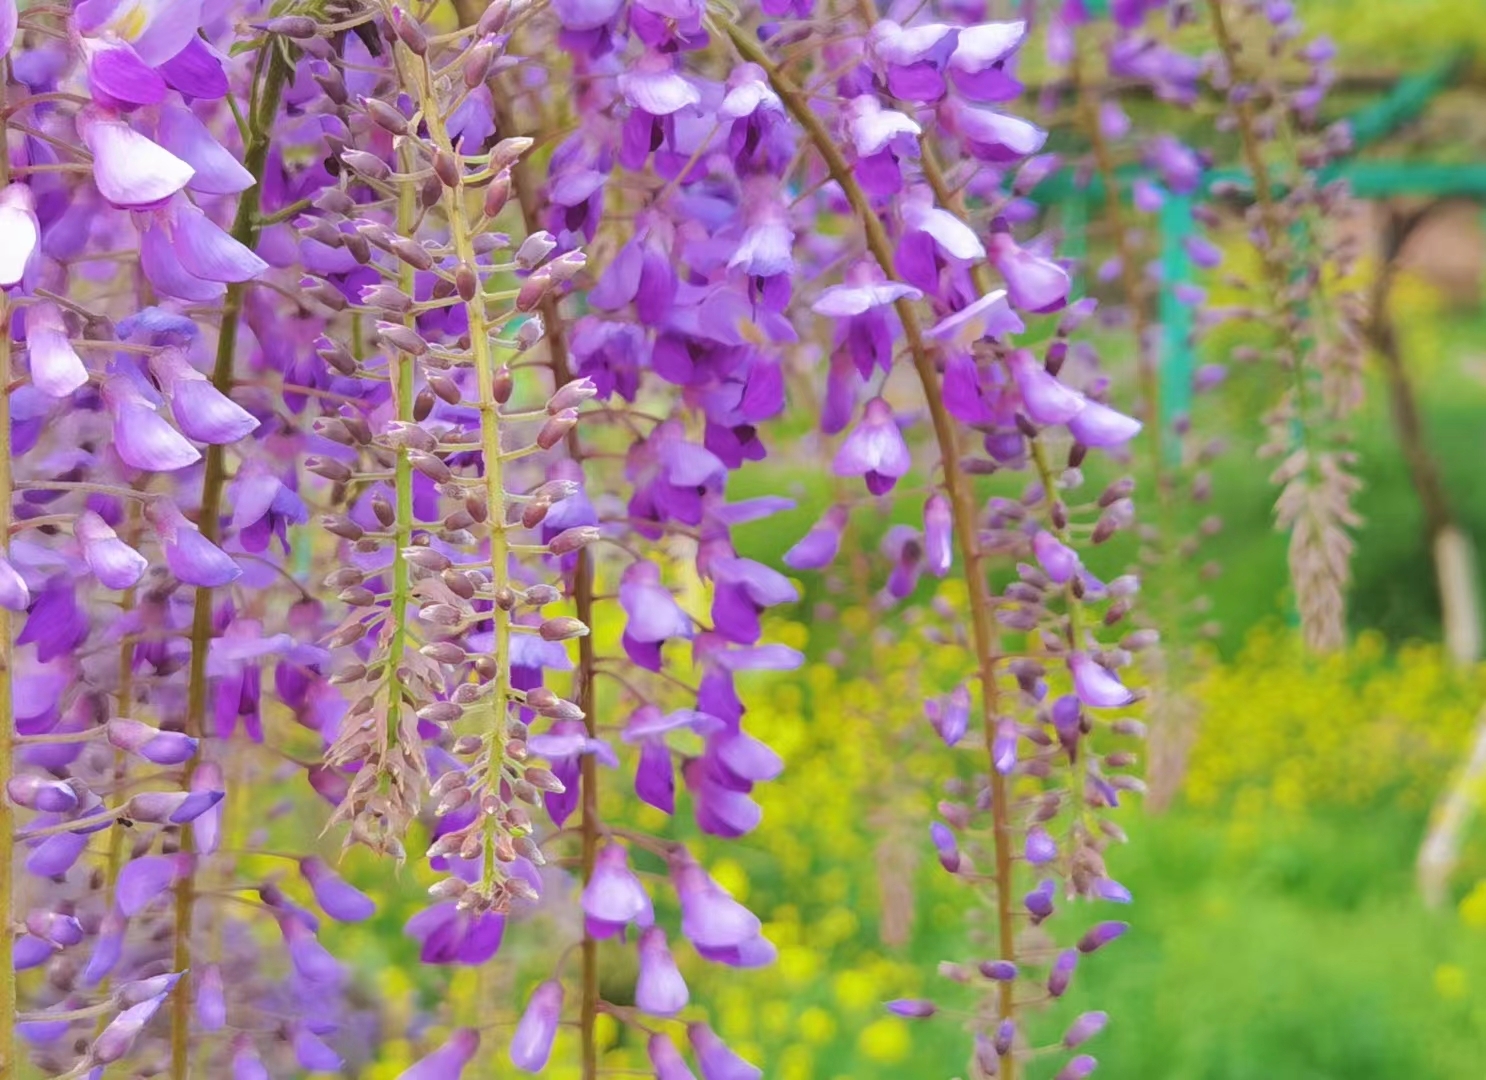 无锡阳山紫藤园的紫藤美的震撼人心。